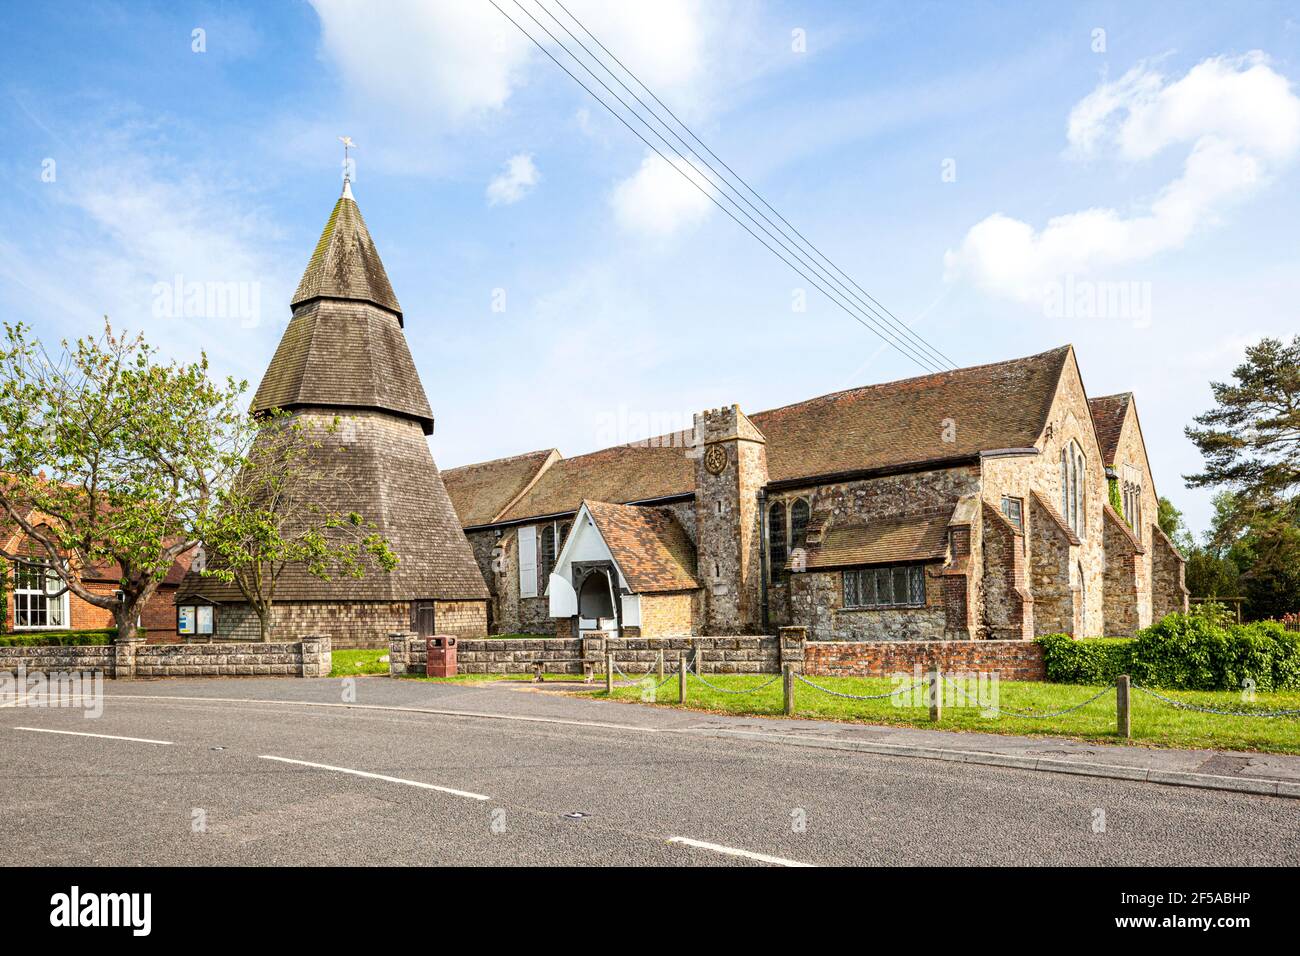 Eglise St Augustines dans le village Romney Marsh de Brookland, Kent UK - clocher octogonal en bois du XIIIe siècle détaché en raison du sol marécageux. Banque D'Images